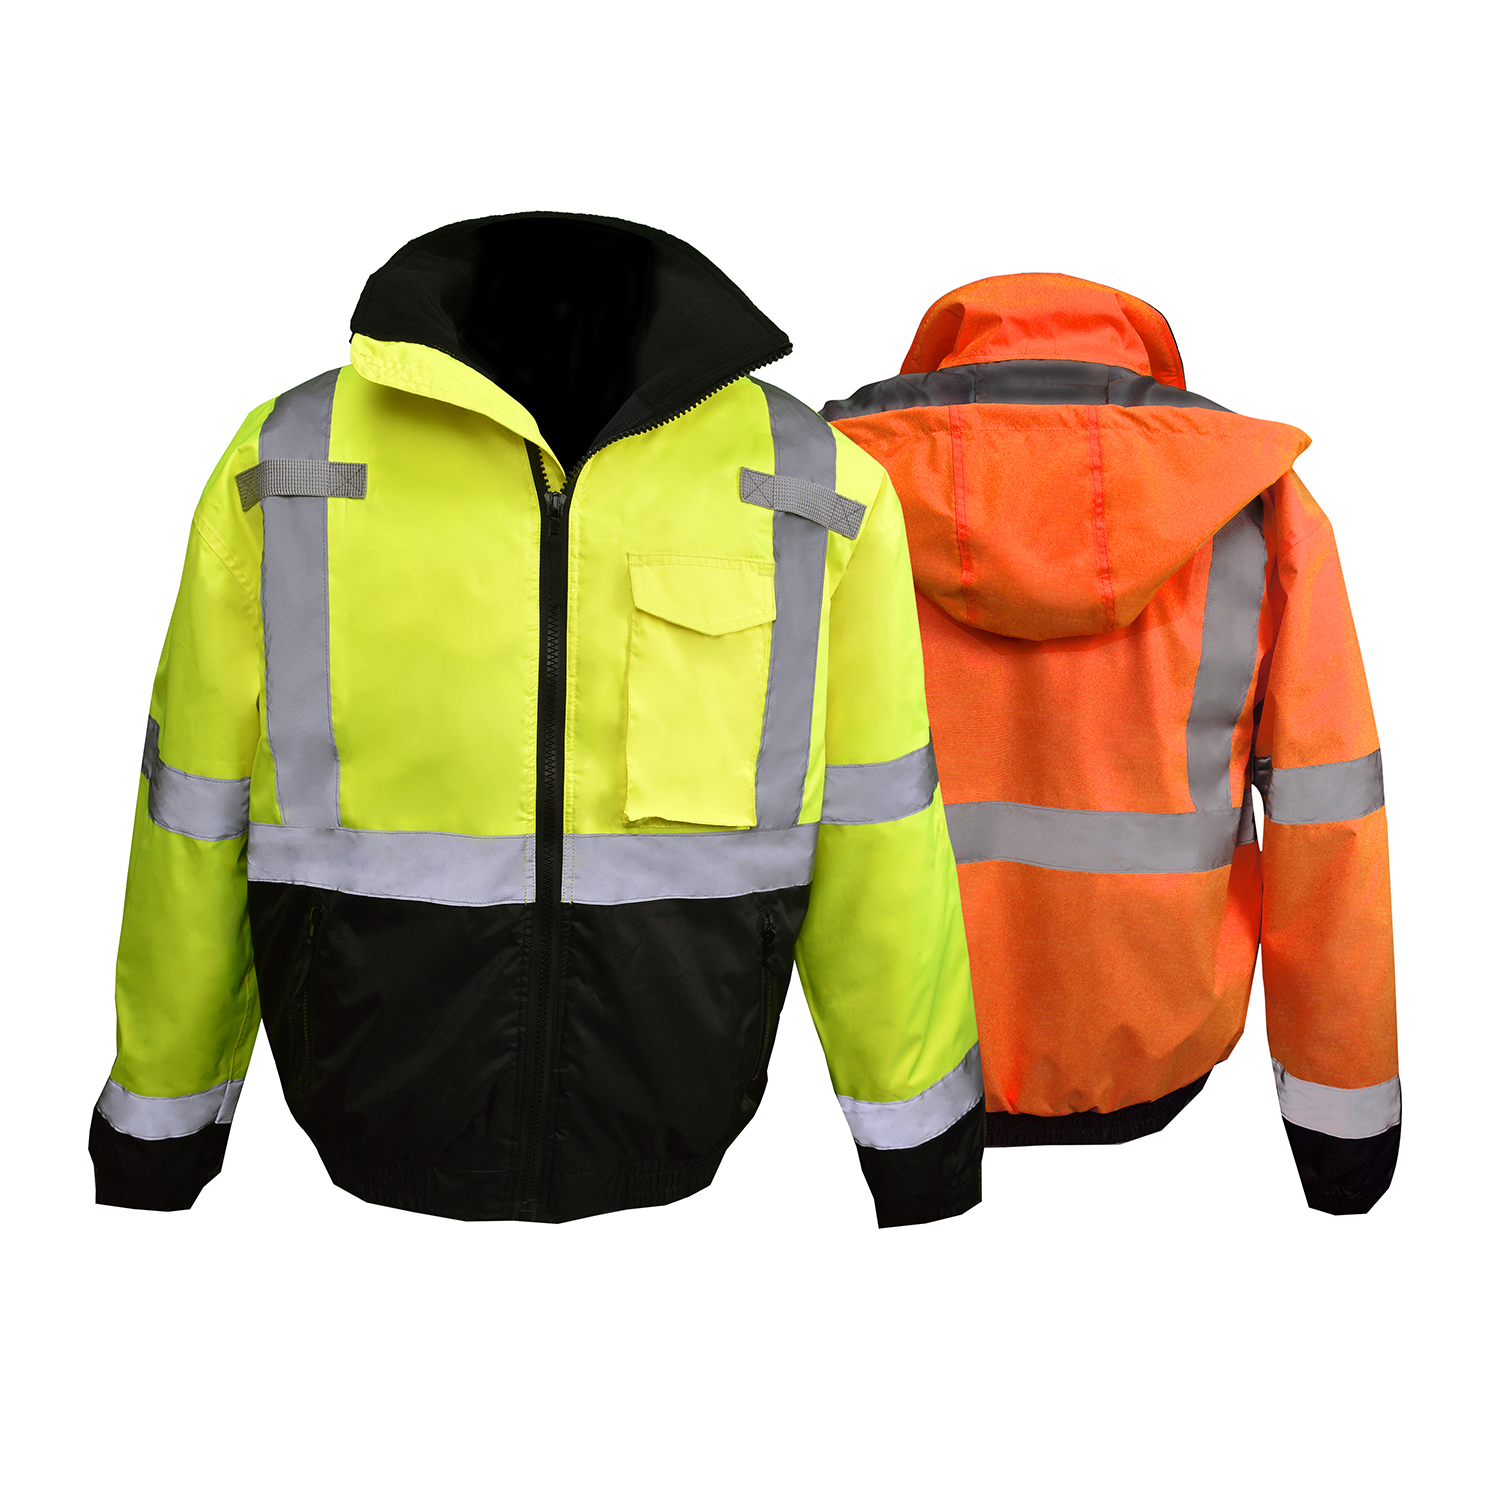 Reflective Safety Jackets | ANSI Compliant Jackets